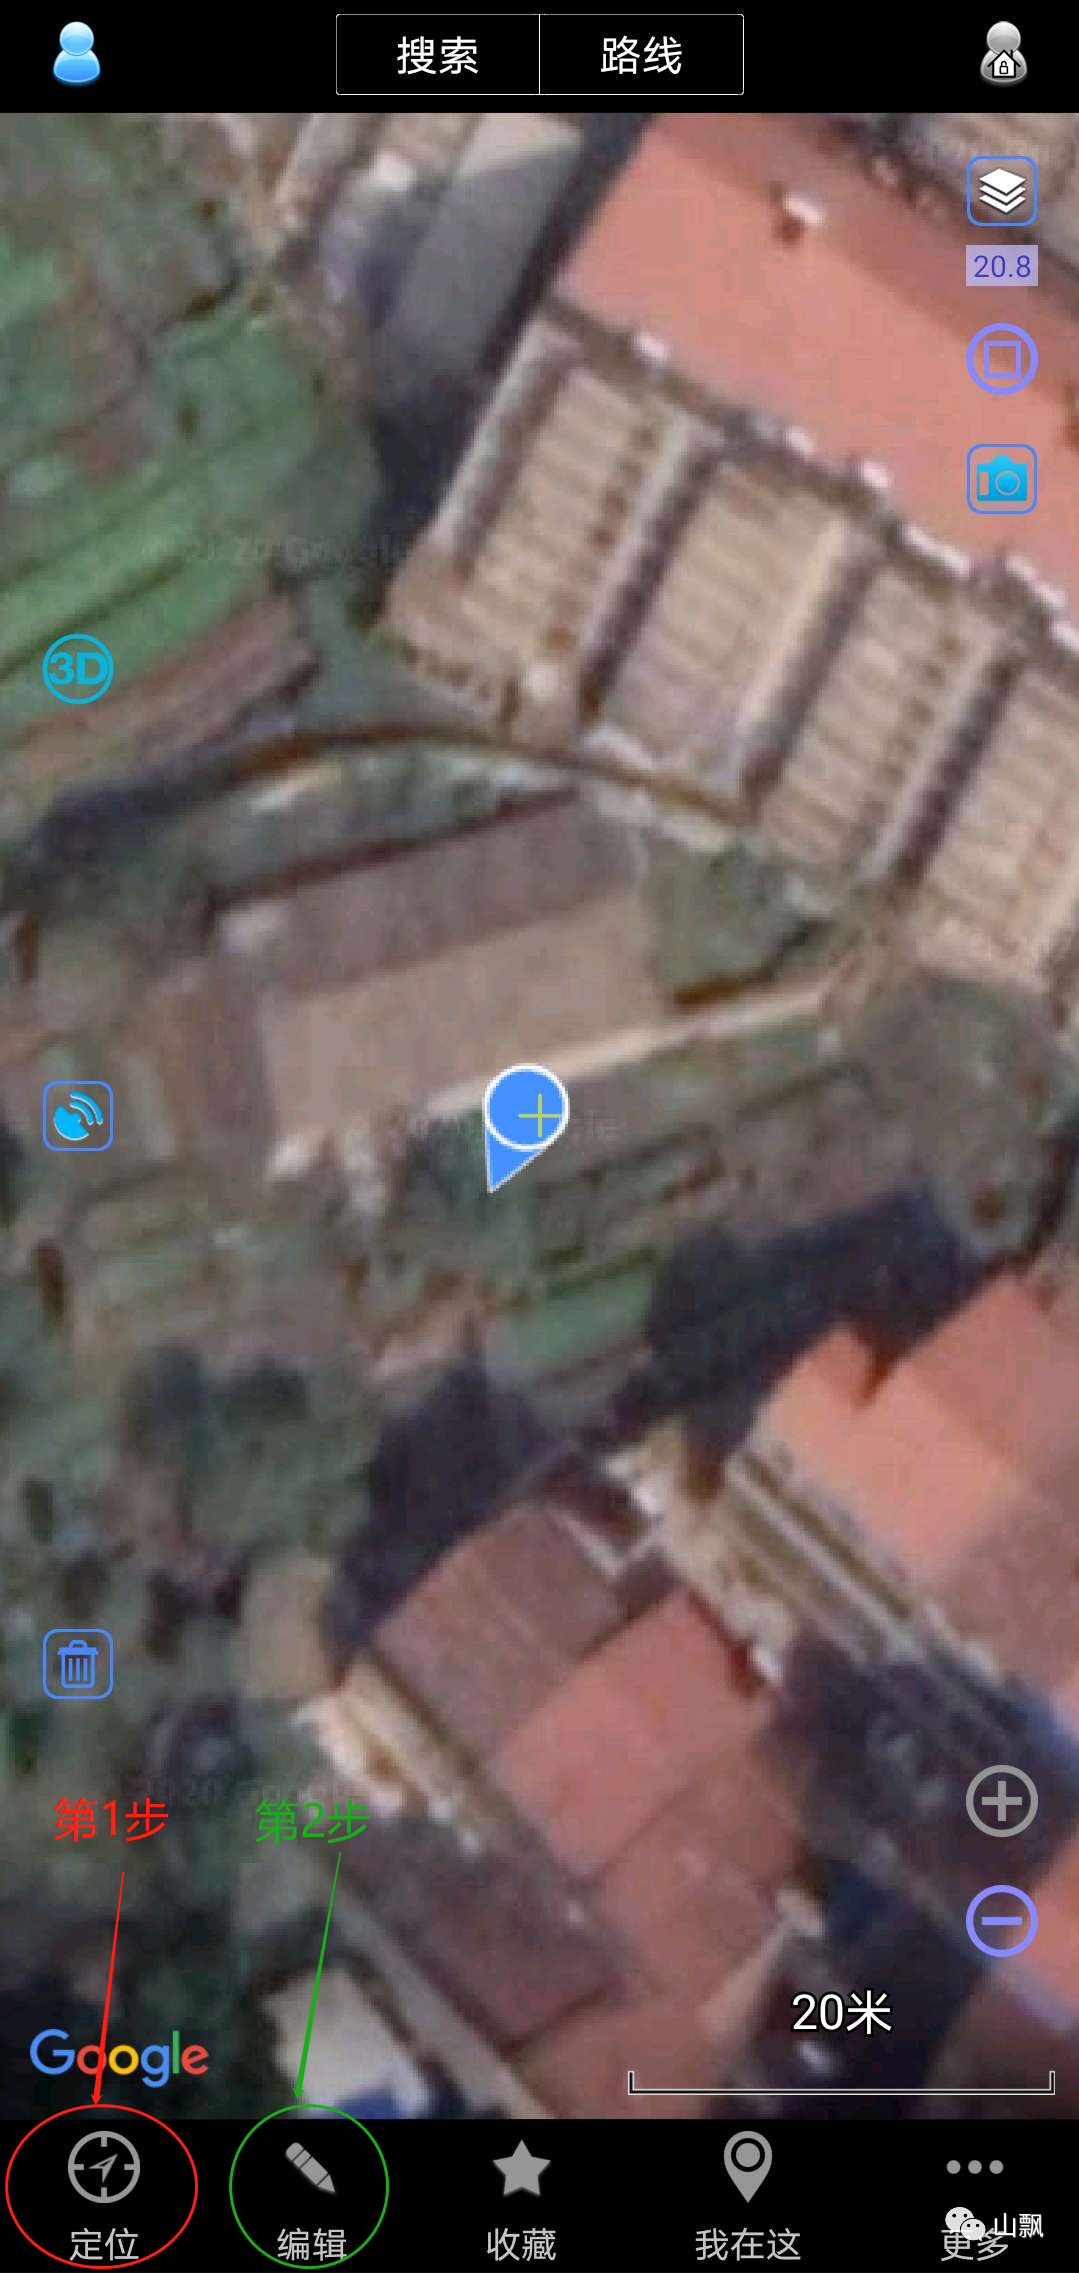 奥维互动地图加载谷歌卫星影像图教程 - 哔哩哔哩